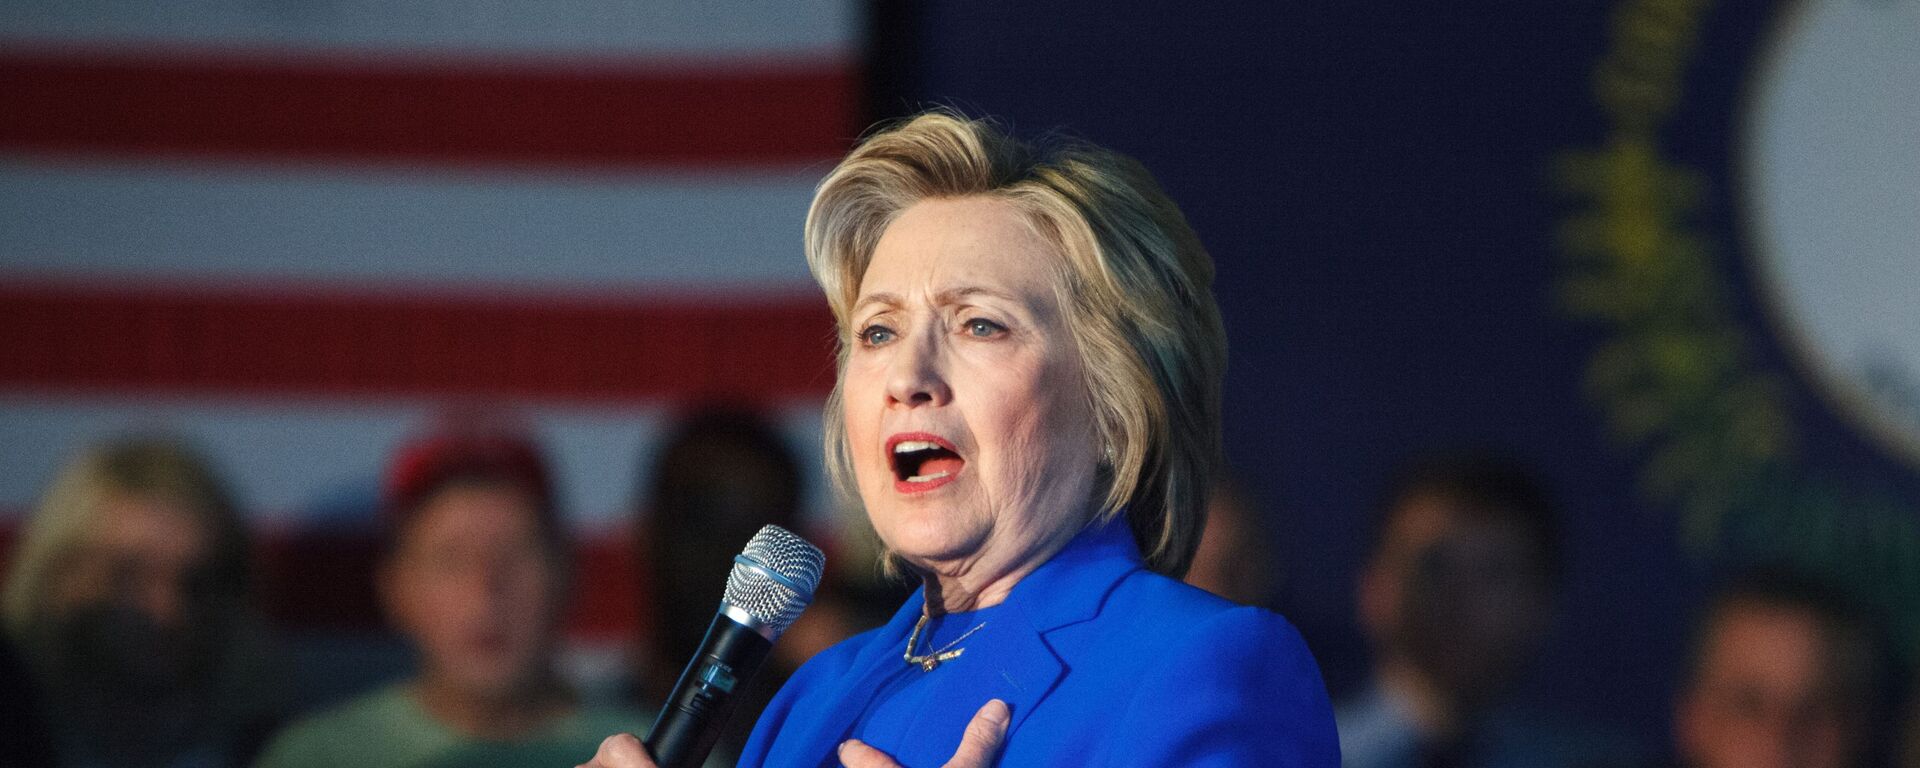 Бивша америчка државна секретарка Хилари Клинтон током предизборне кампање - Sputnik Србија, 1920, 26.01.2021